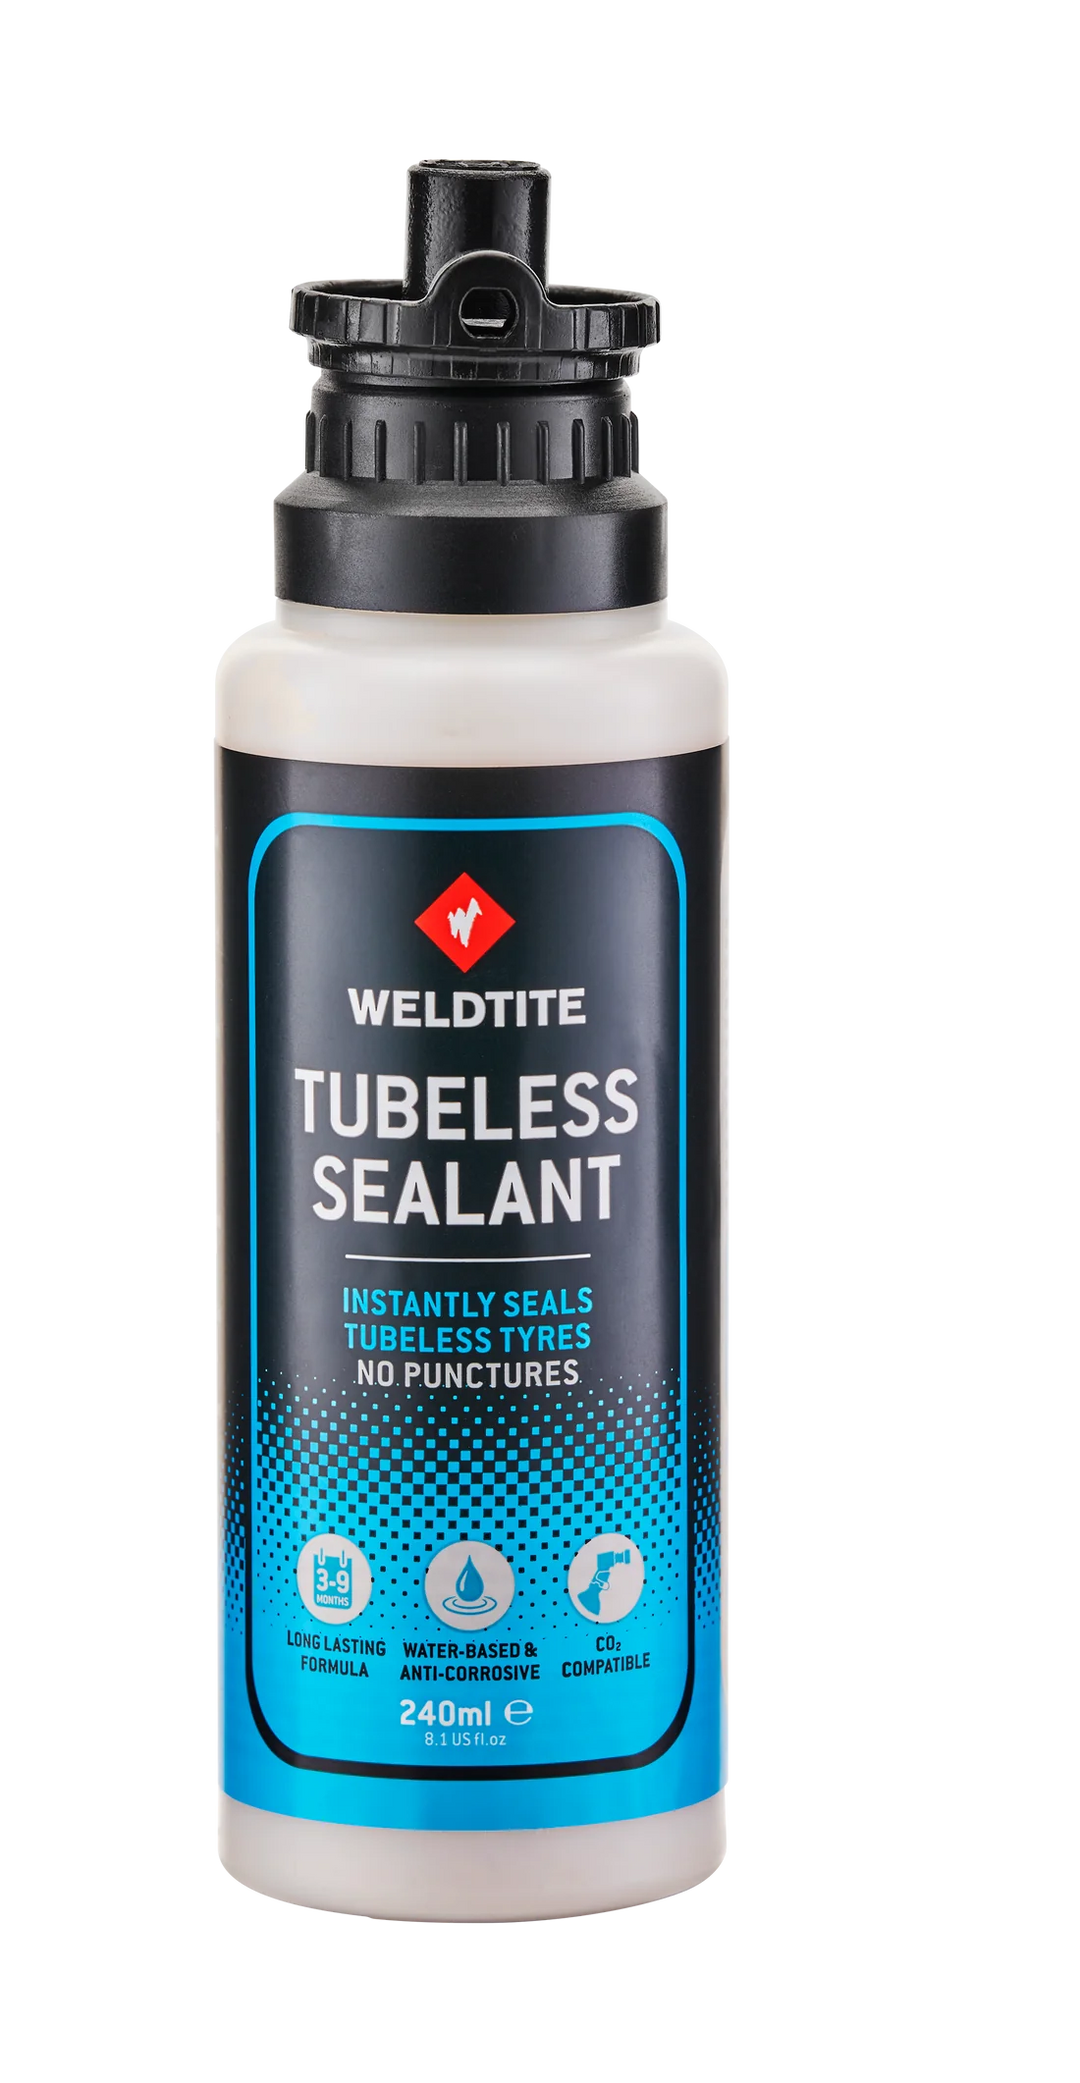 Weldtite Tubeless Sealant 240ml Bottle